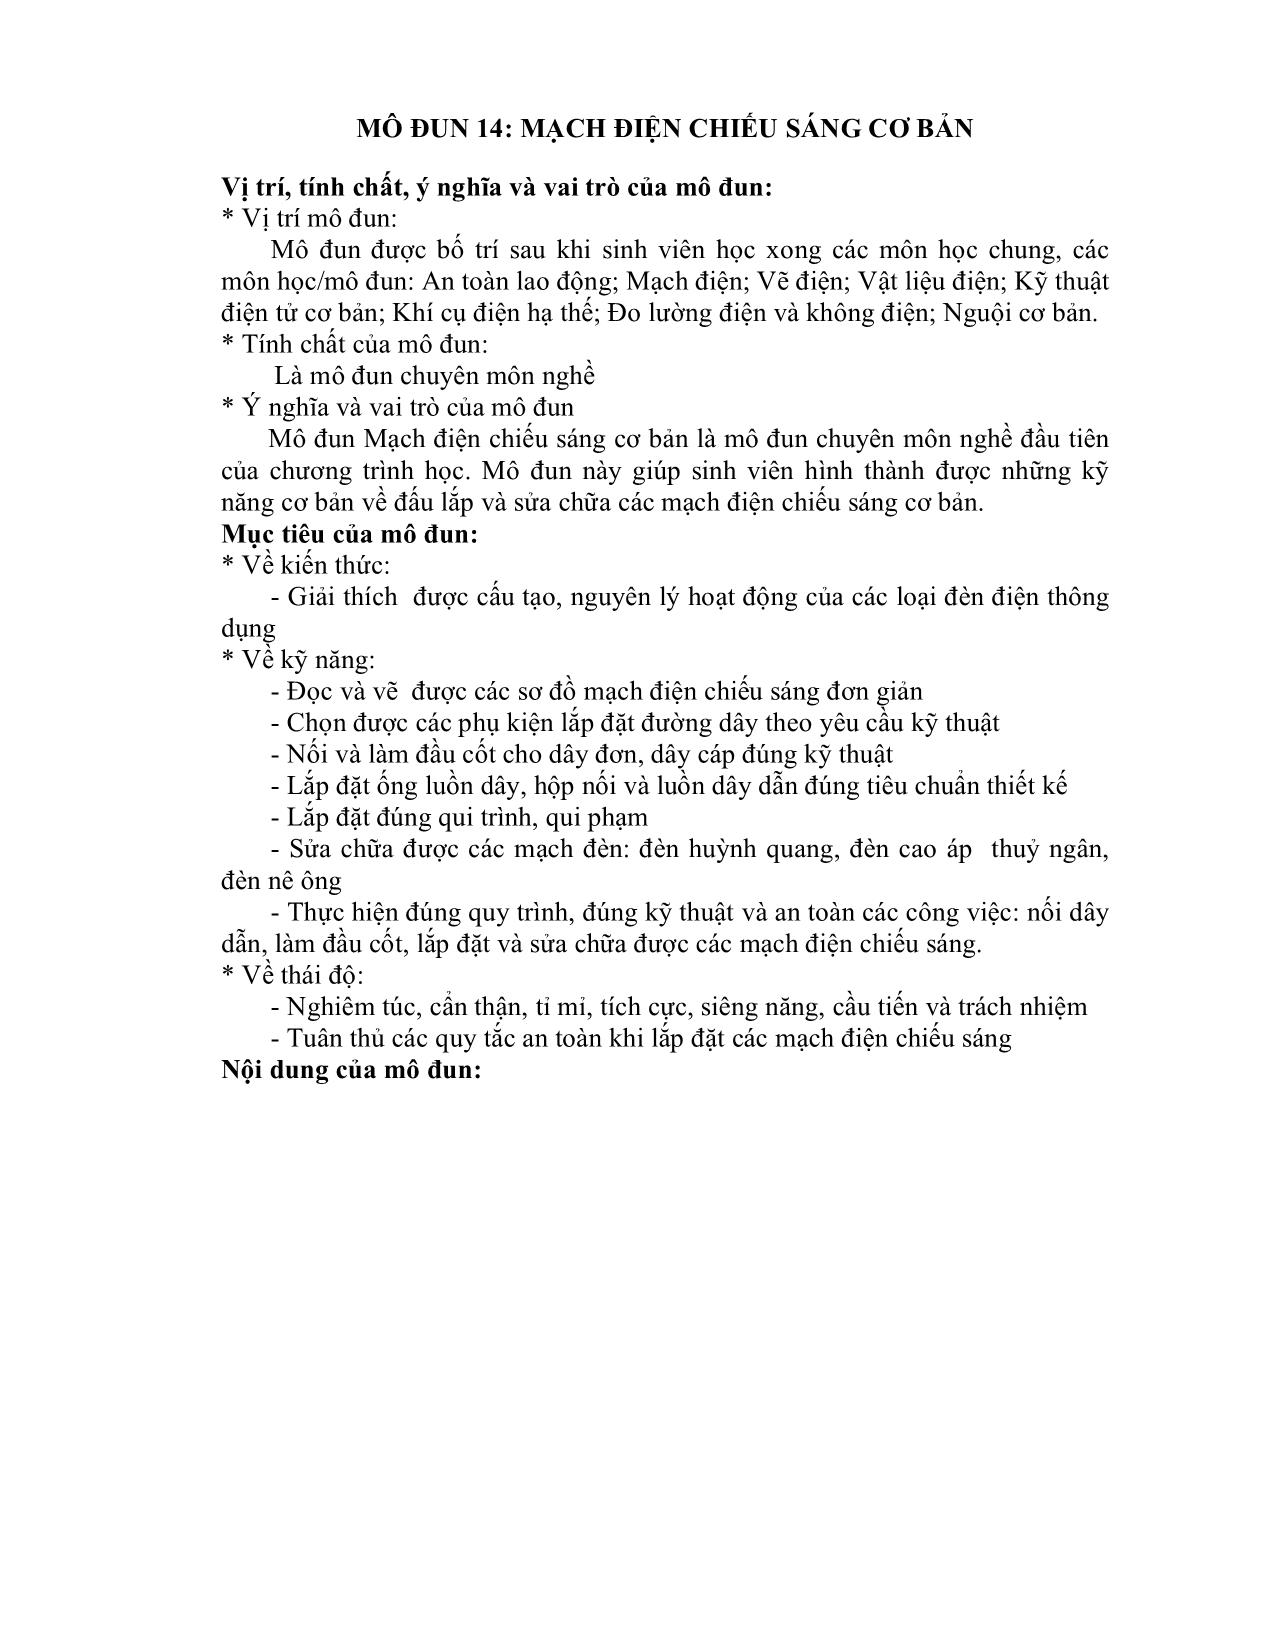 Giáo trình mô đun Mạch điện chiếu sáng cơ bản (Mới) trang 9